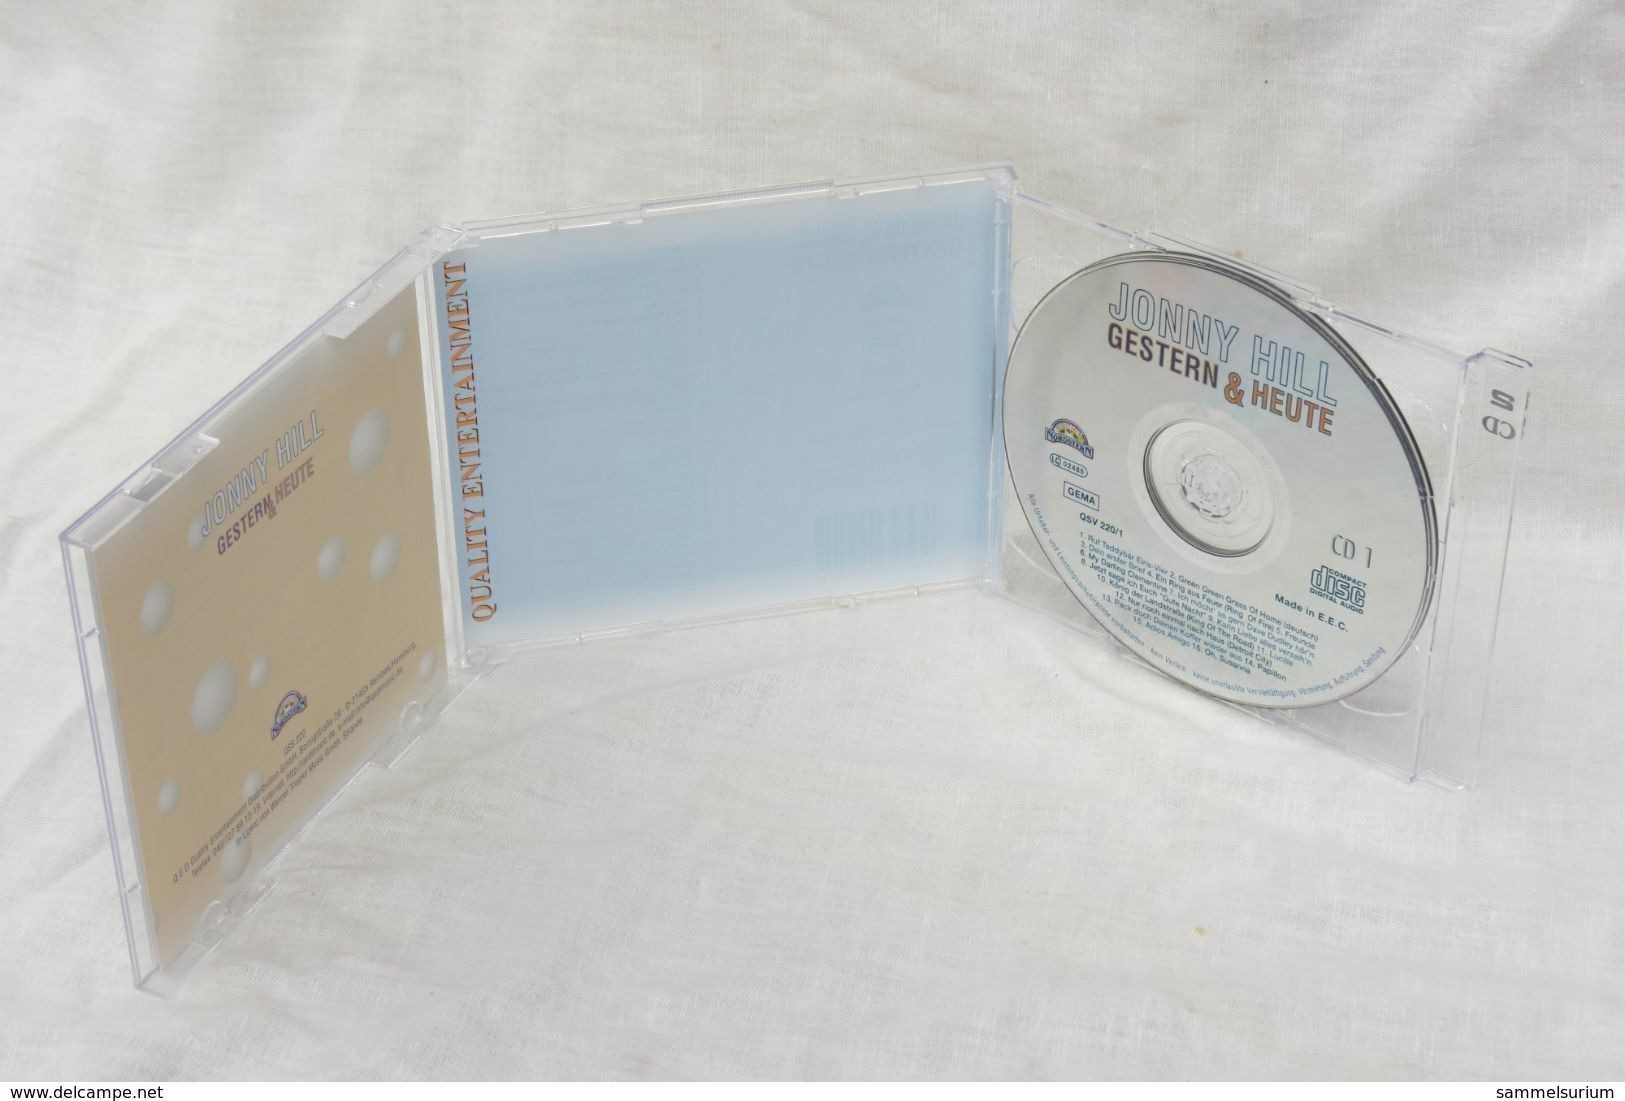 2 CDs "Jonny Hill" Gestern & Heute - Sonstige - Deutsche Musik